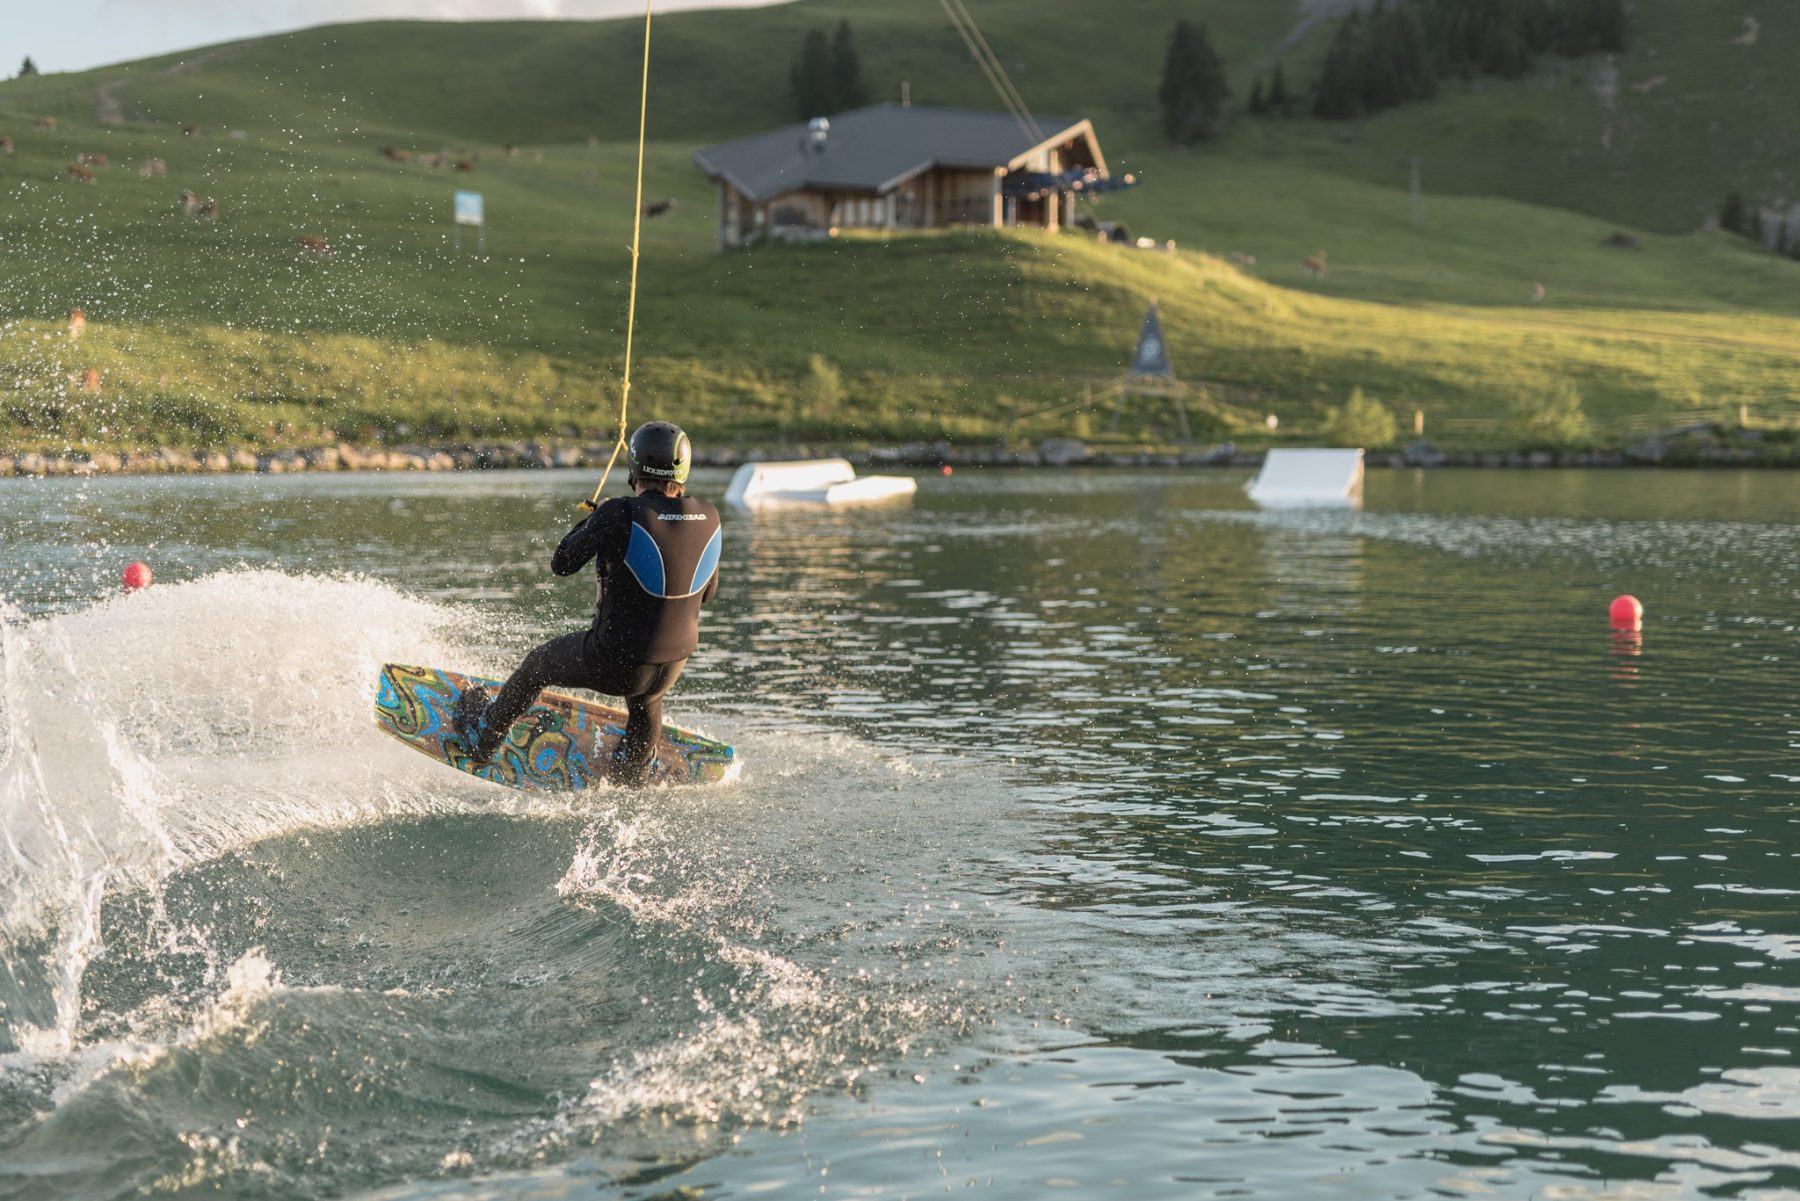 In Gstaad barst het van de leuke outdooractiviteiten, zoals wakeboarden.